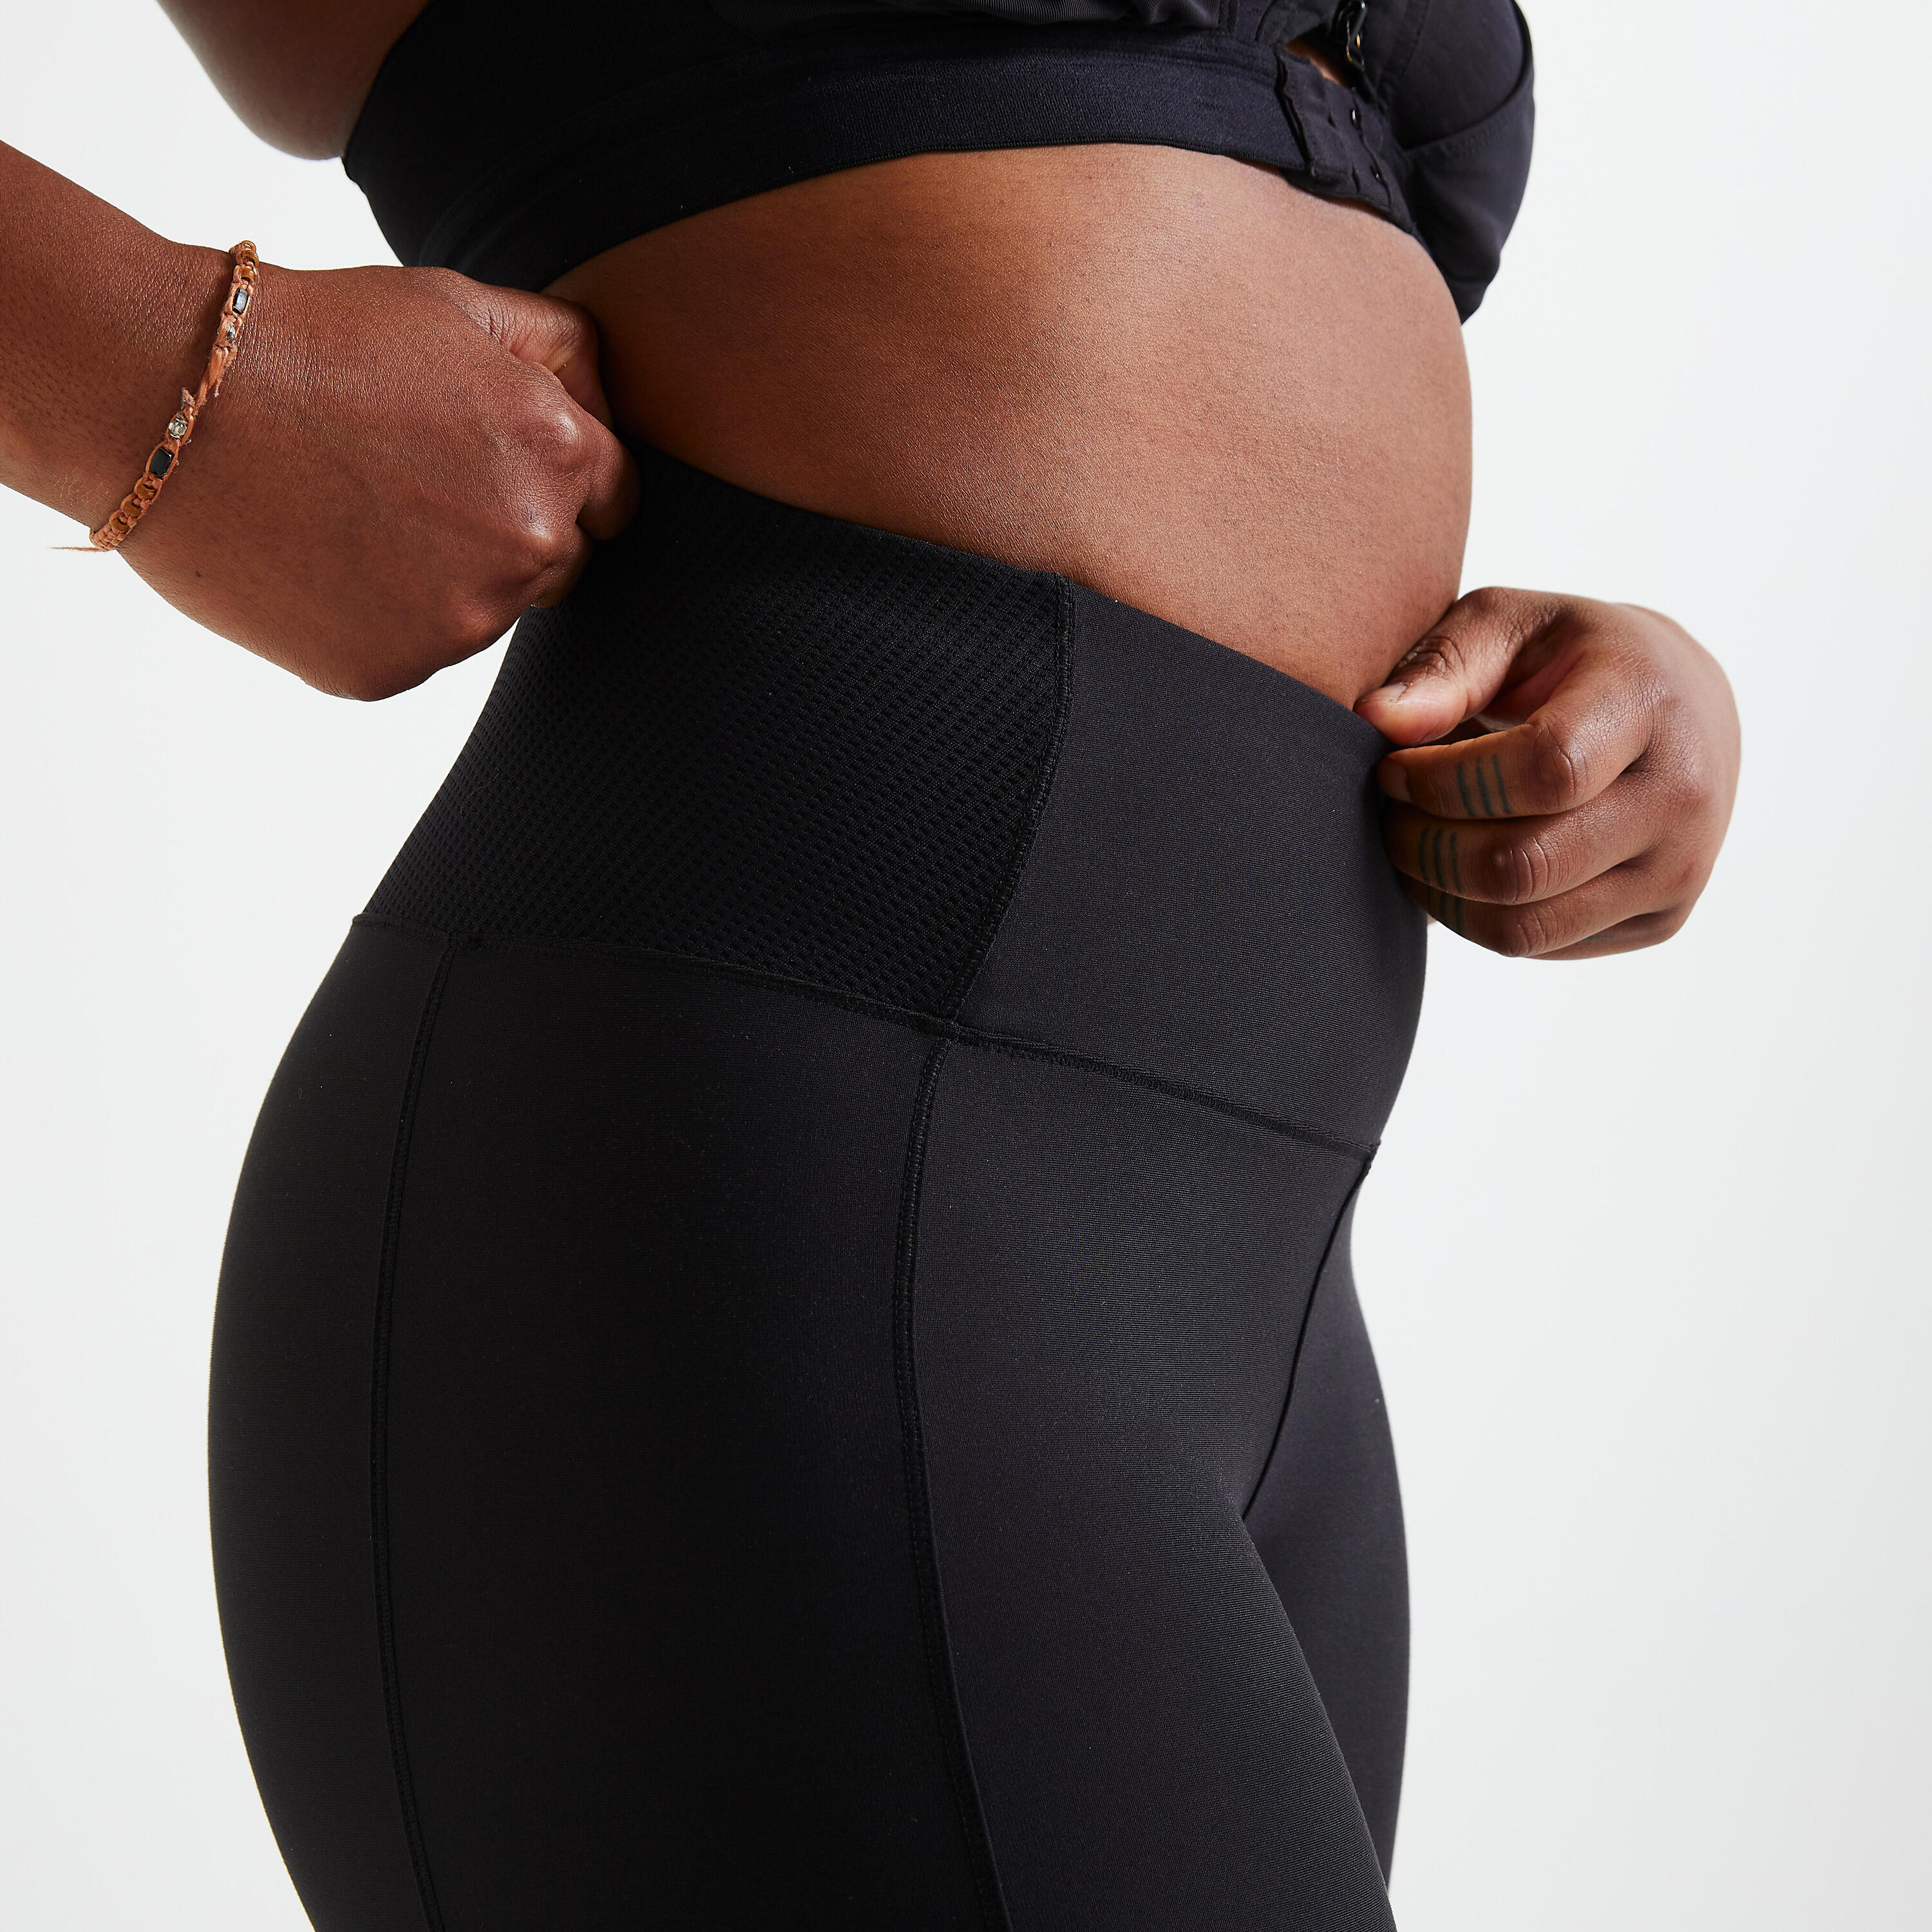 Women's phone pocket fitness high-waisted leggings, indigo - Decathlon